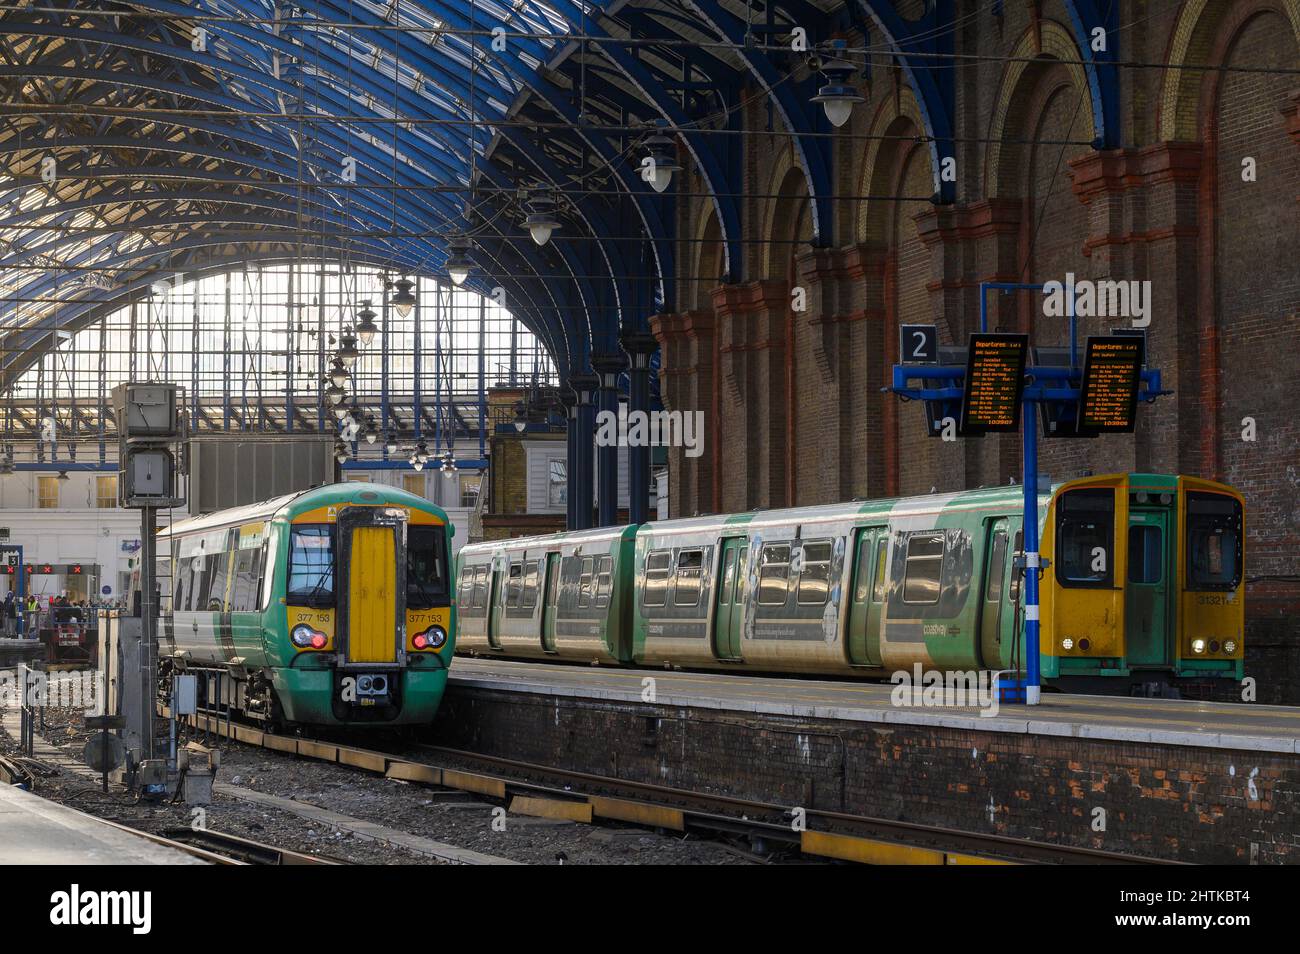 Personenzüge in südlicher Lackierung warten auf Bahnsteigen, Brighton Railway Station, England. Stockfoto